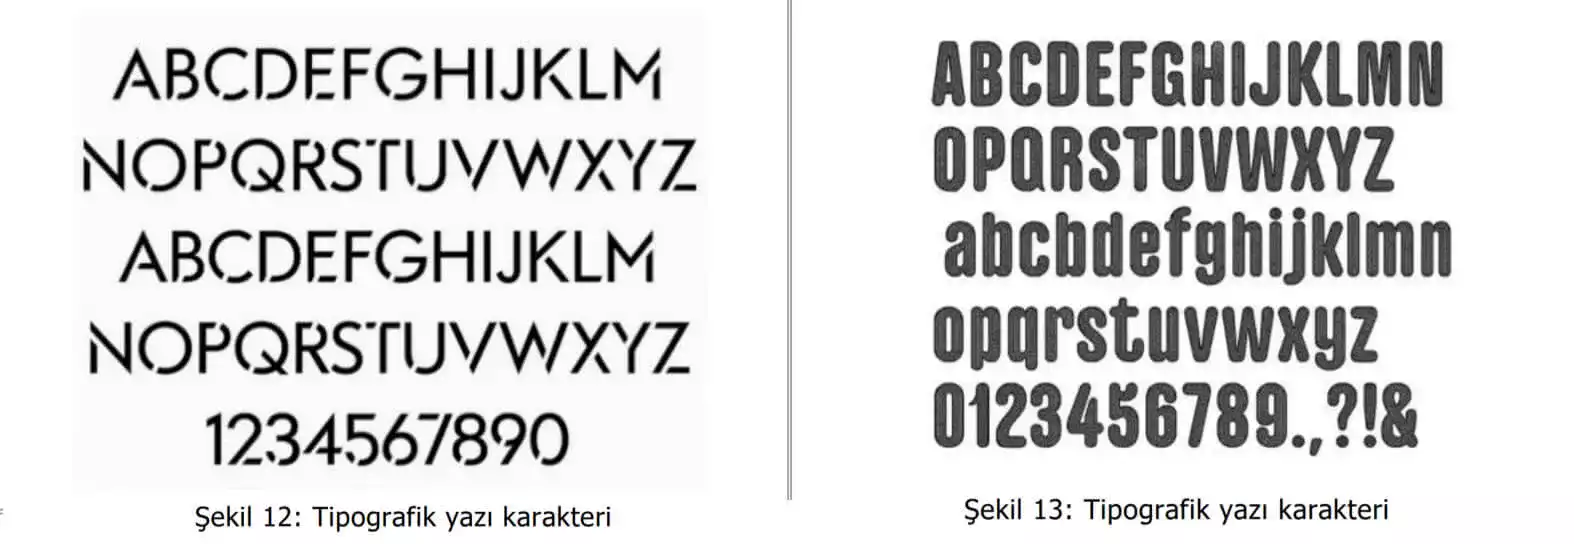 tipografik yazı karakter örnekleri-Adana patent